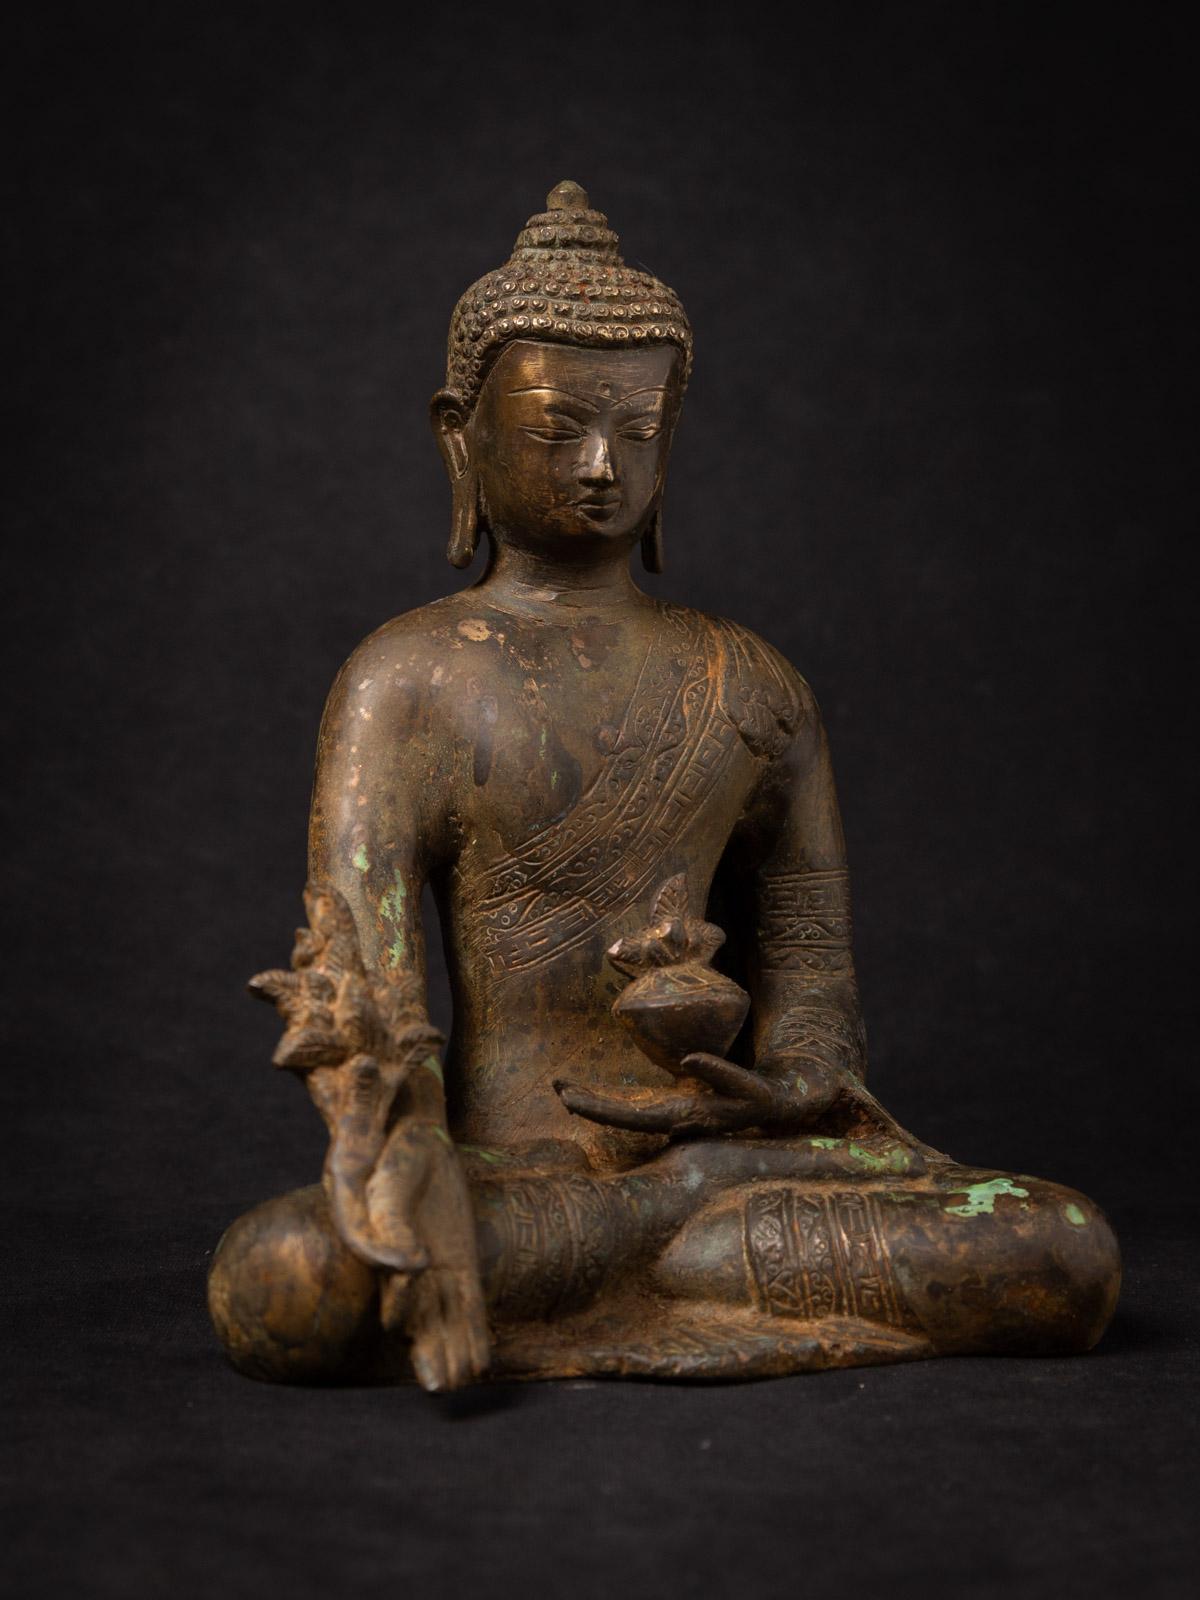 Contemporary Recently made Bronze Nepali Medicine Buddha from Nepal - OriginalBuddhas